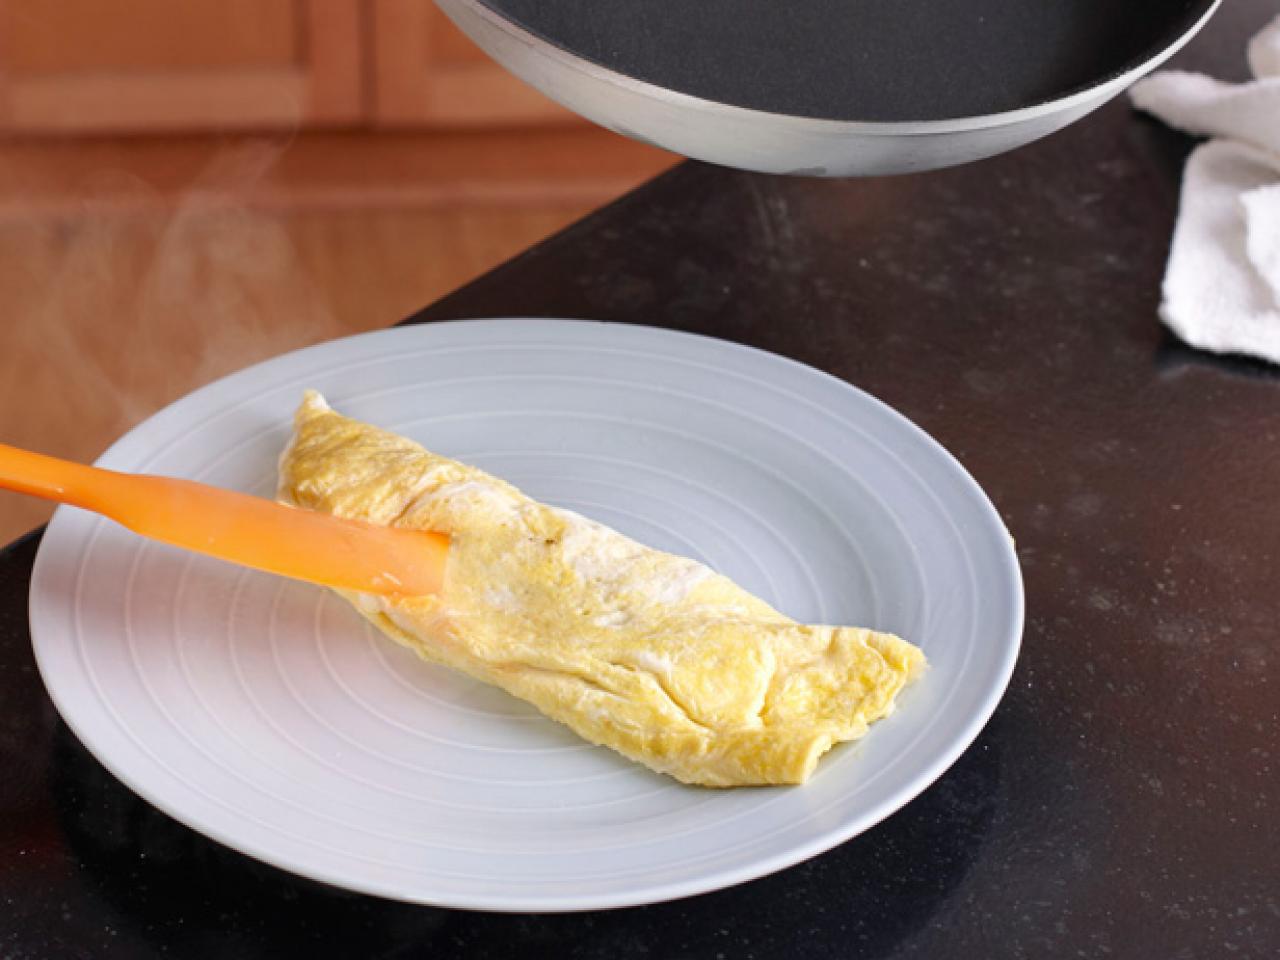 Cracking egg tips from world's fastest omelette maker